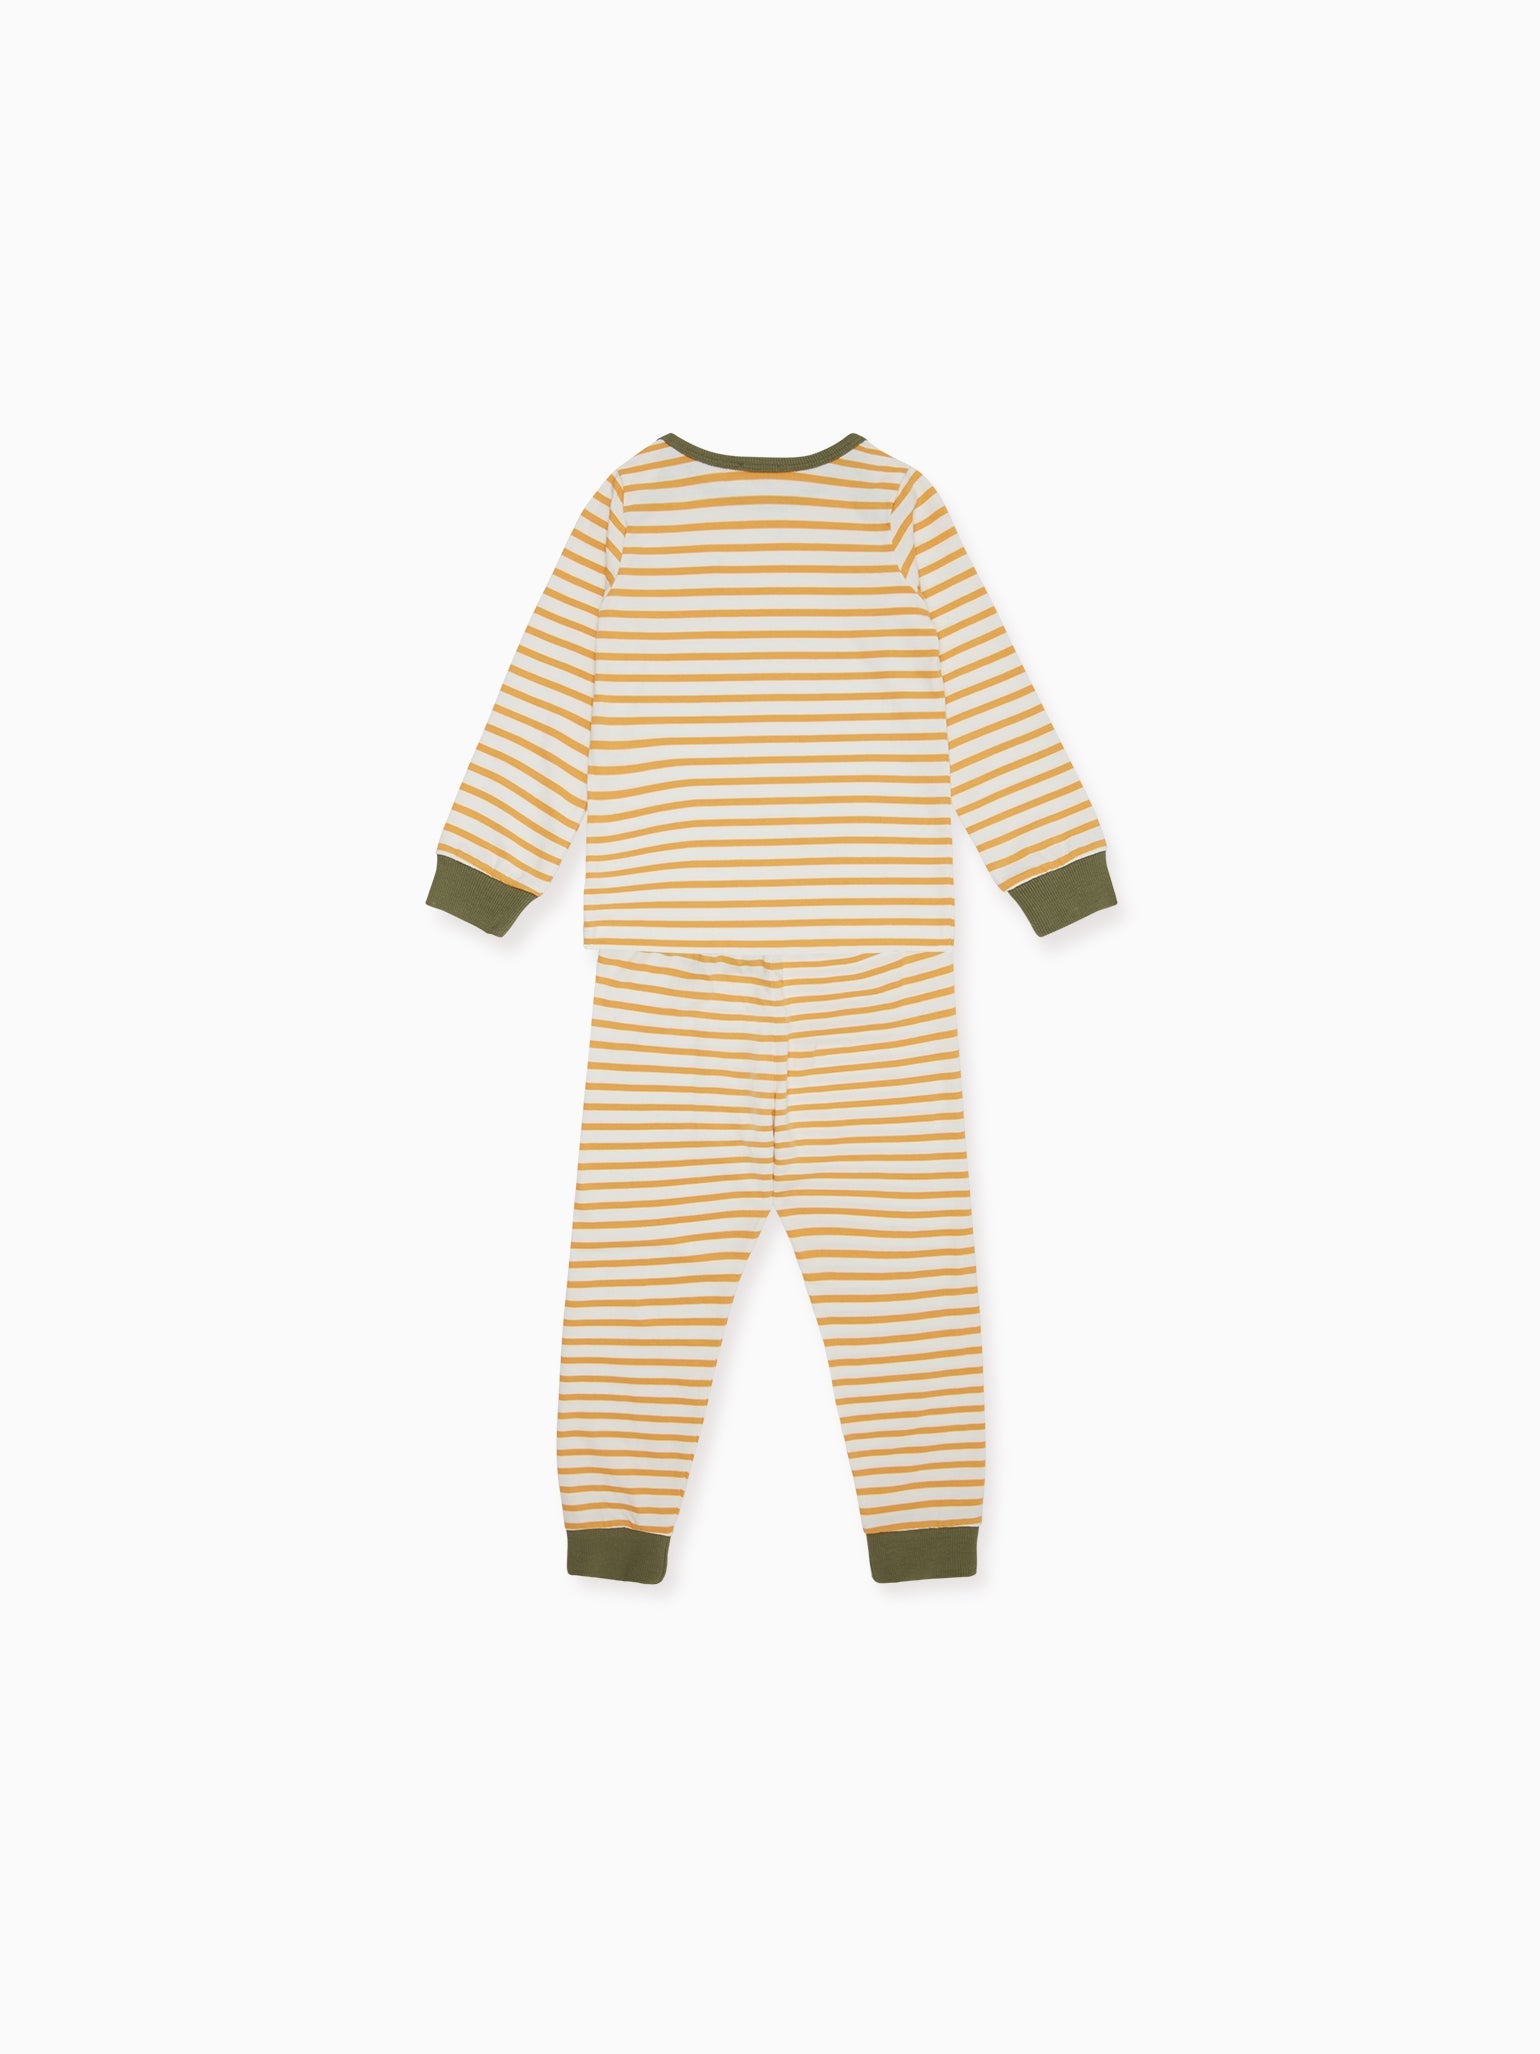 Mustard Stripe Amor Kids Pyjamas